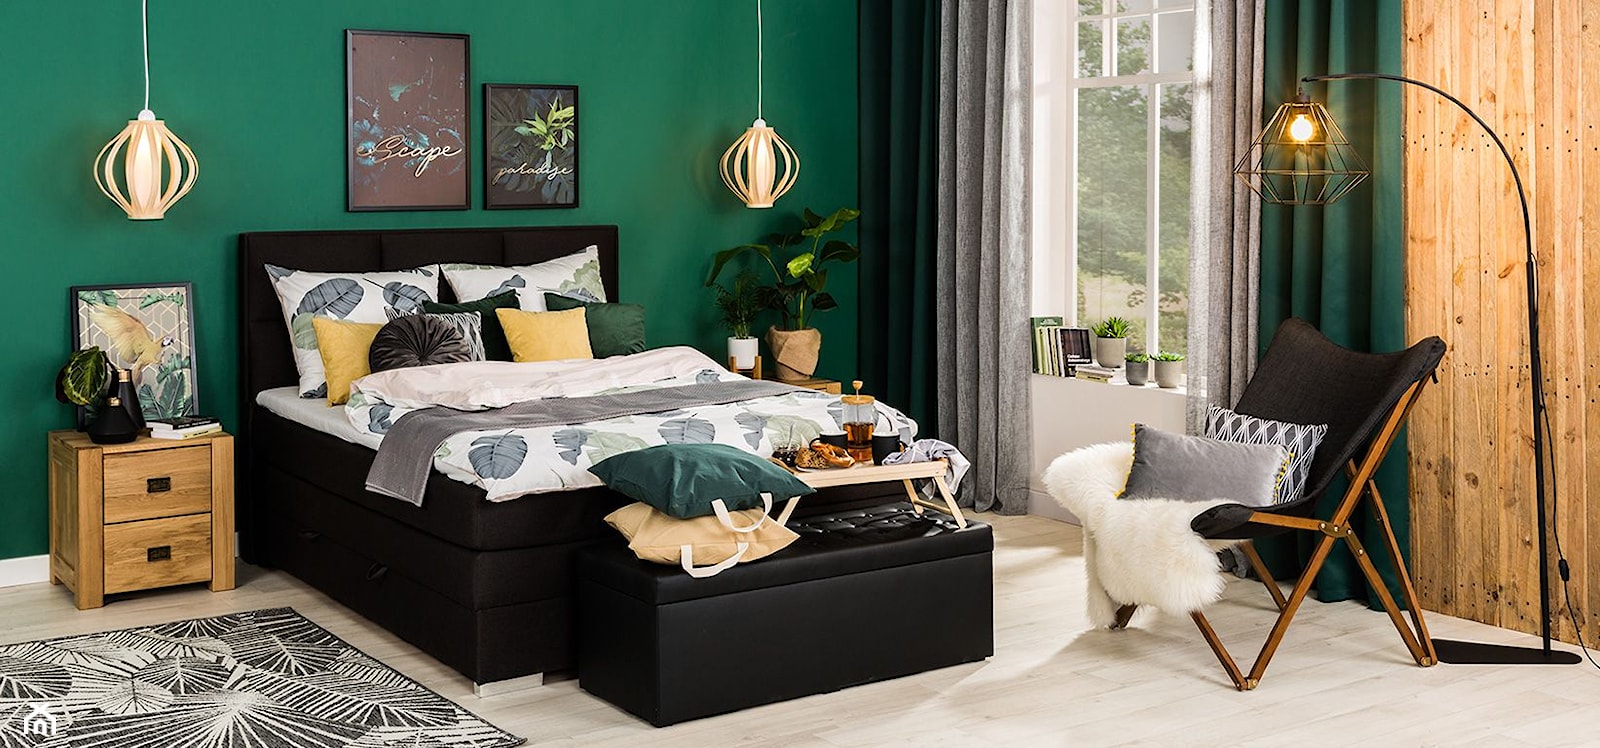 Sypialnia - Średnia zielona sypialnia, styl nowoczesny - zdjęcie od Salony Agata - Homebook